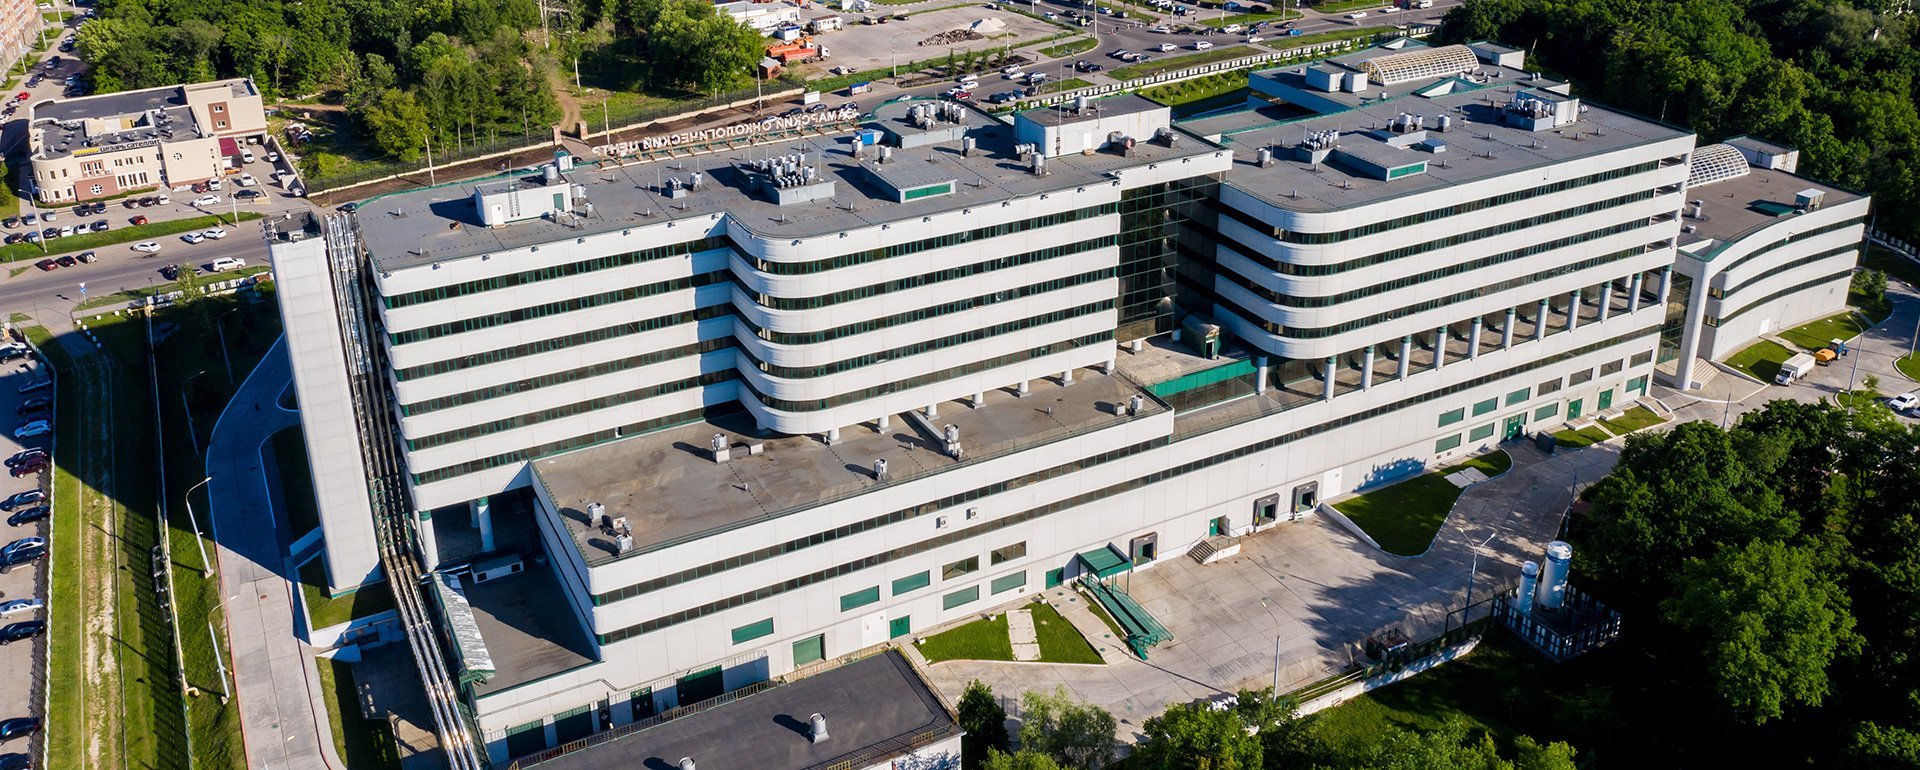 Aerial exterior shot of a hospital